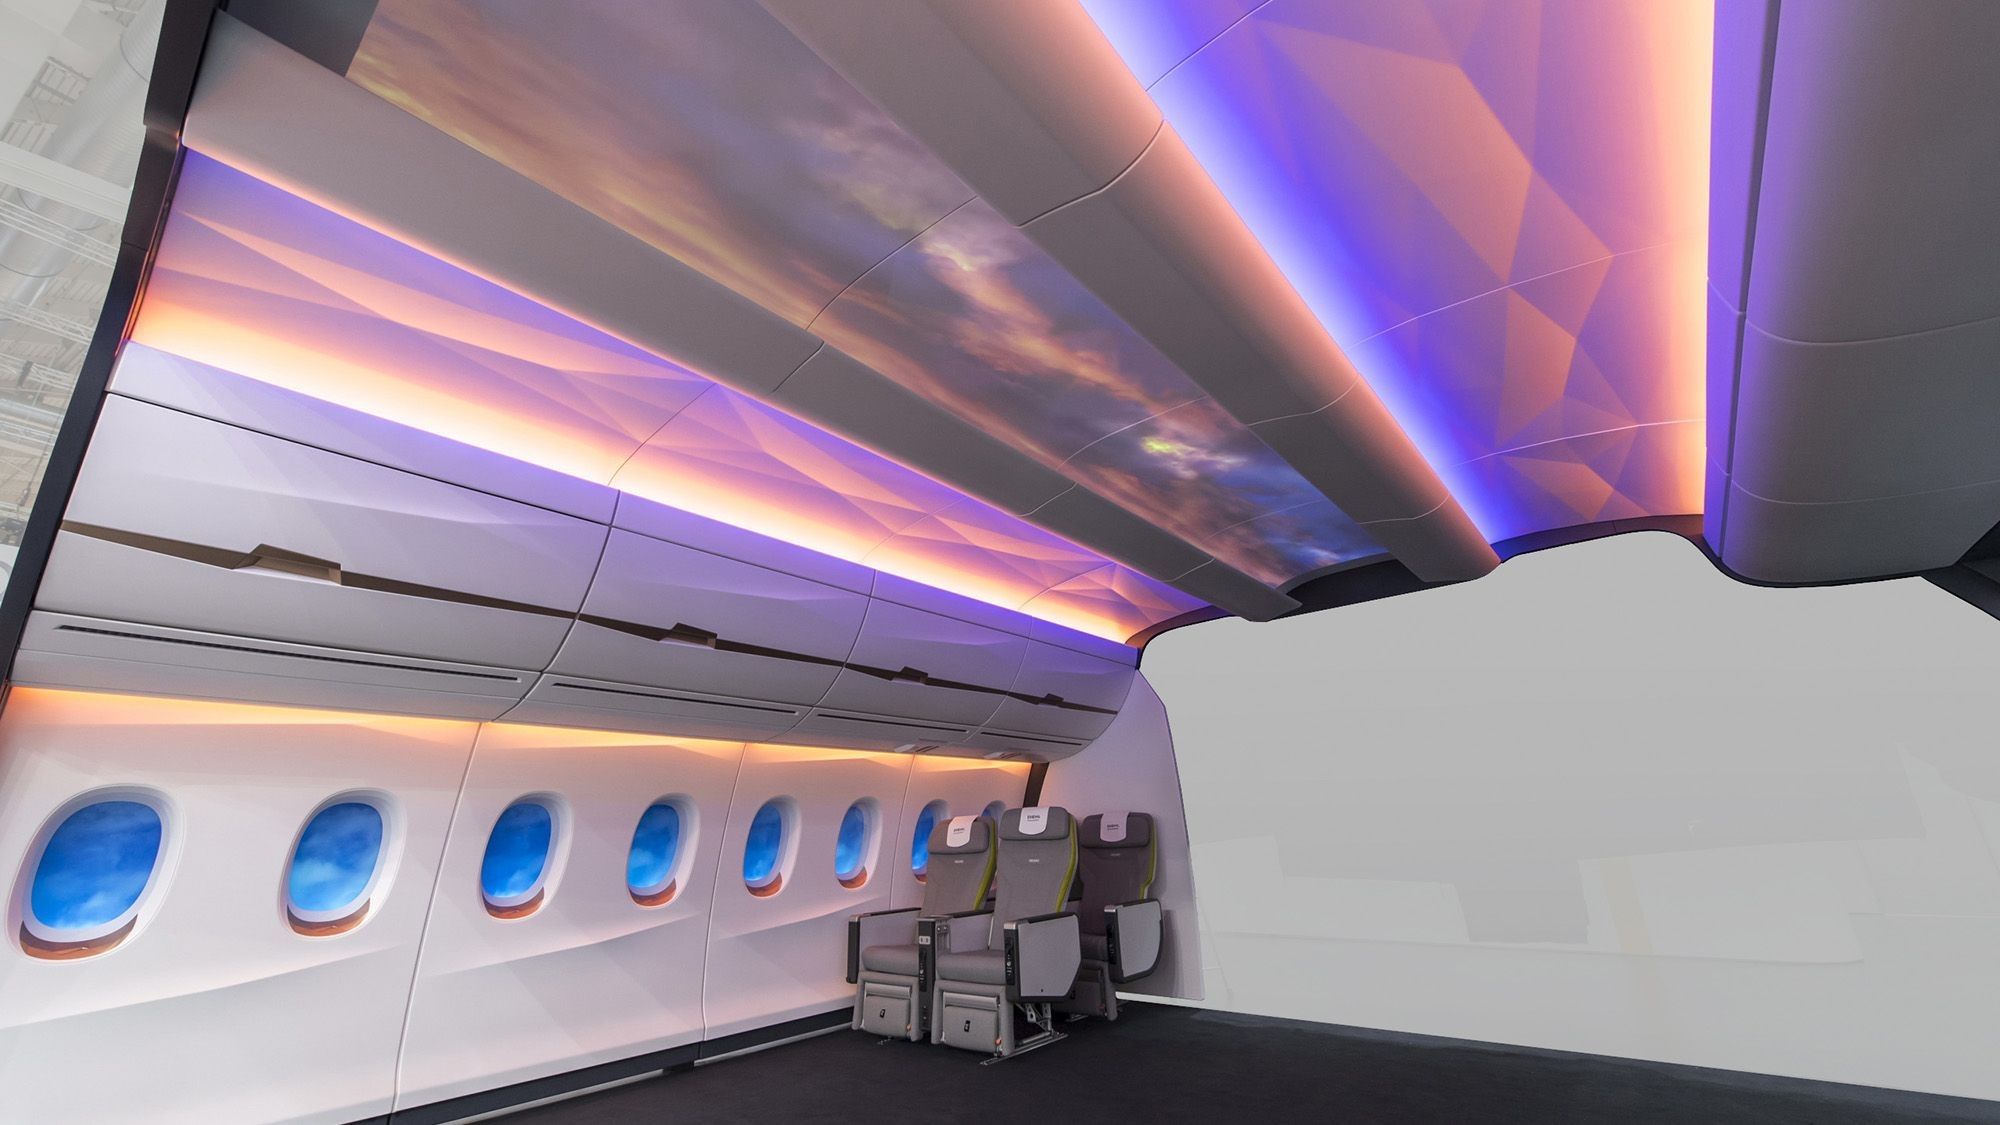 Diehl Flugzeugkabine bunt leuchtende Decke